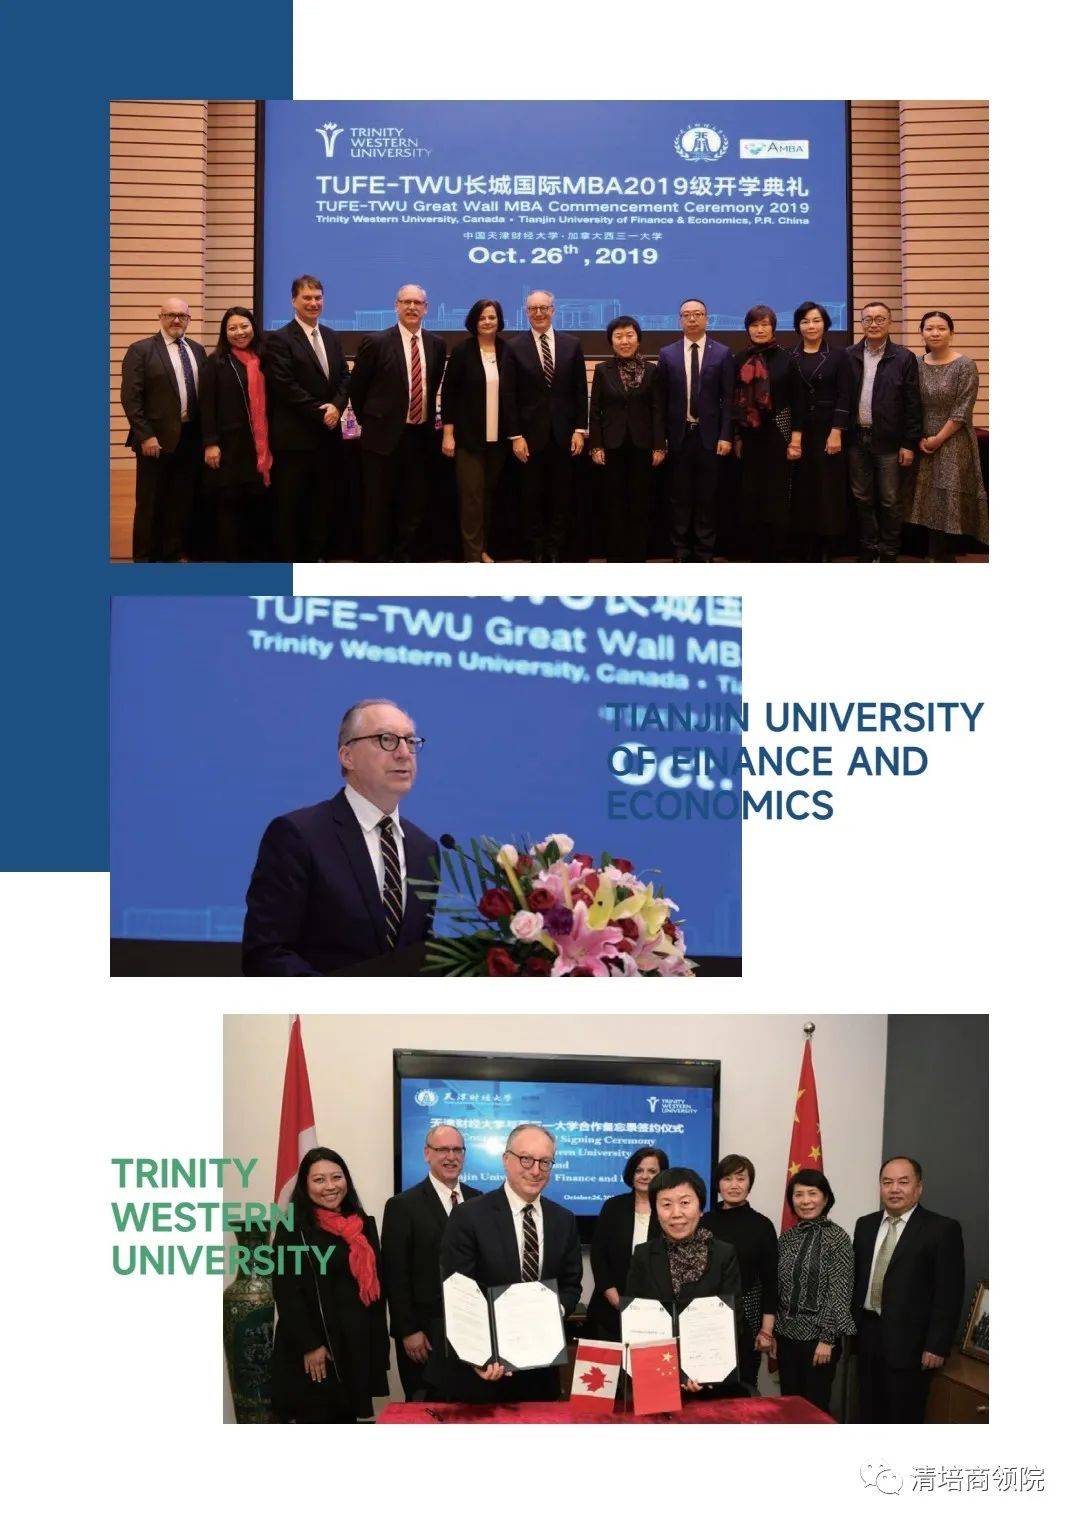 中国天津22选5
大学加拿大西三一大学合作举办工商管理硕士培养目标